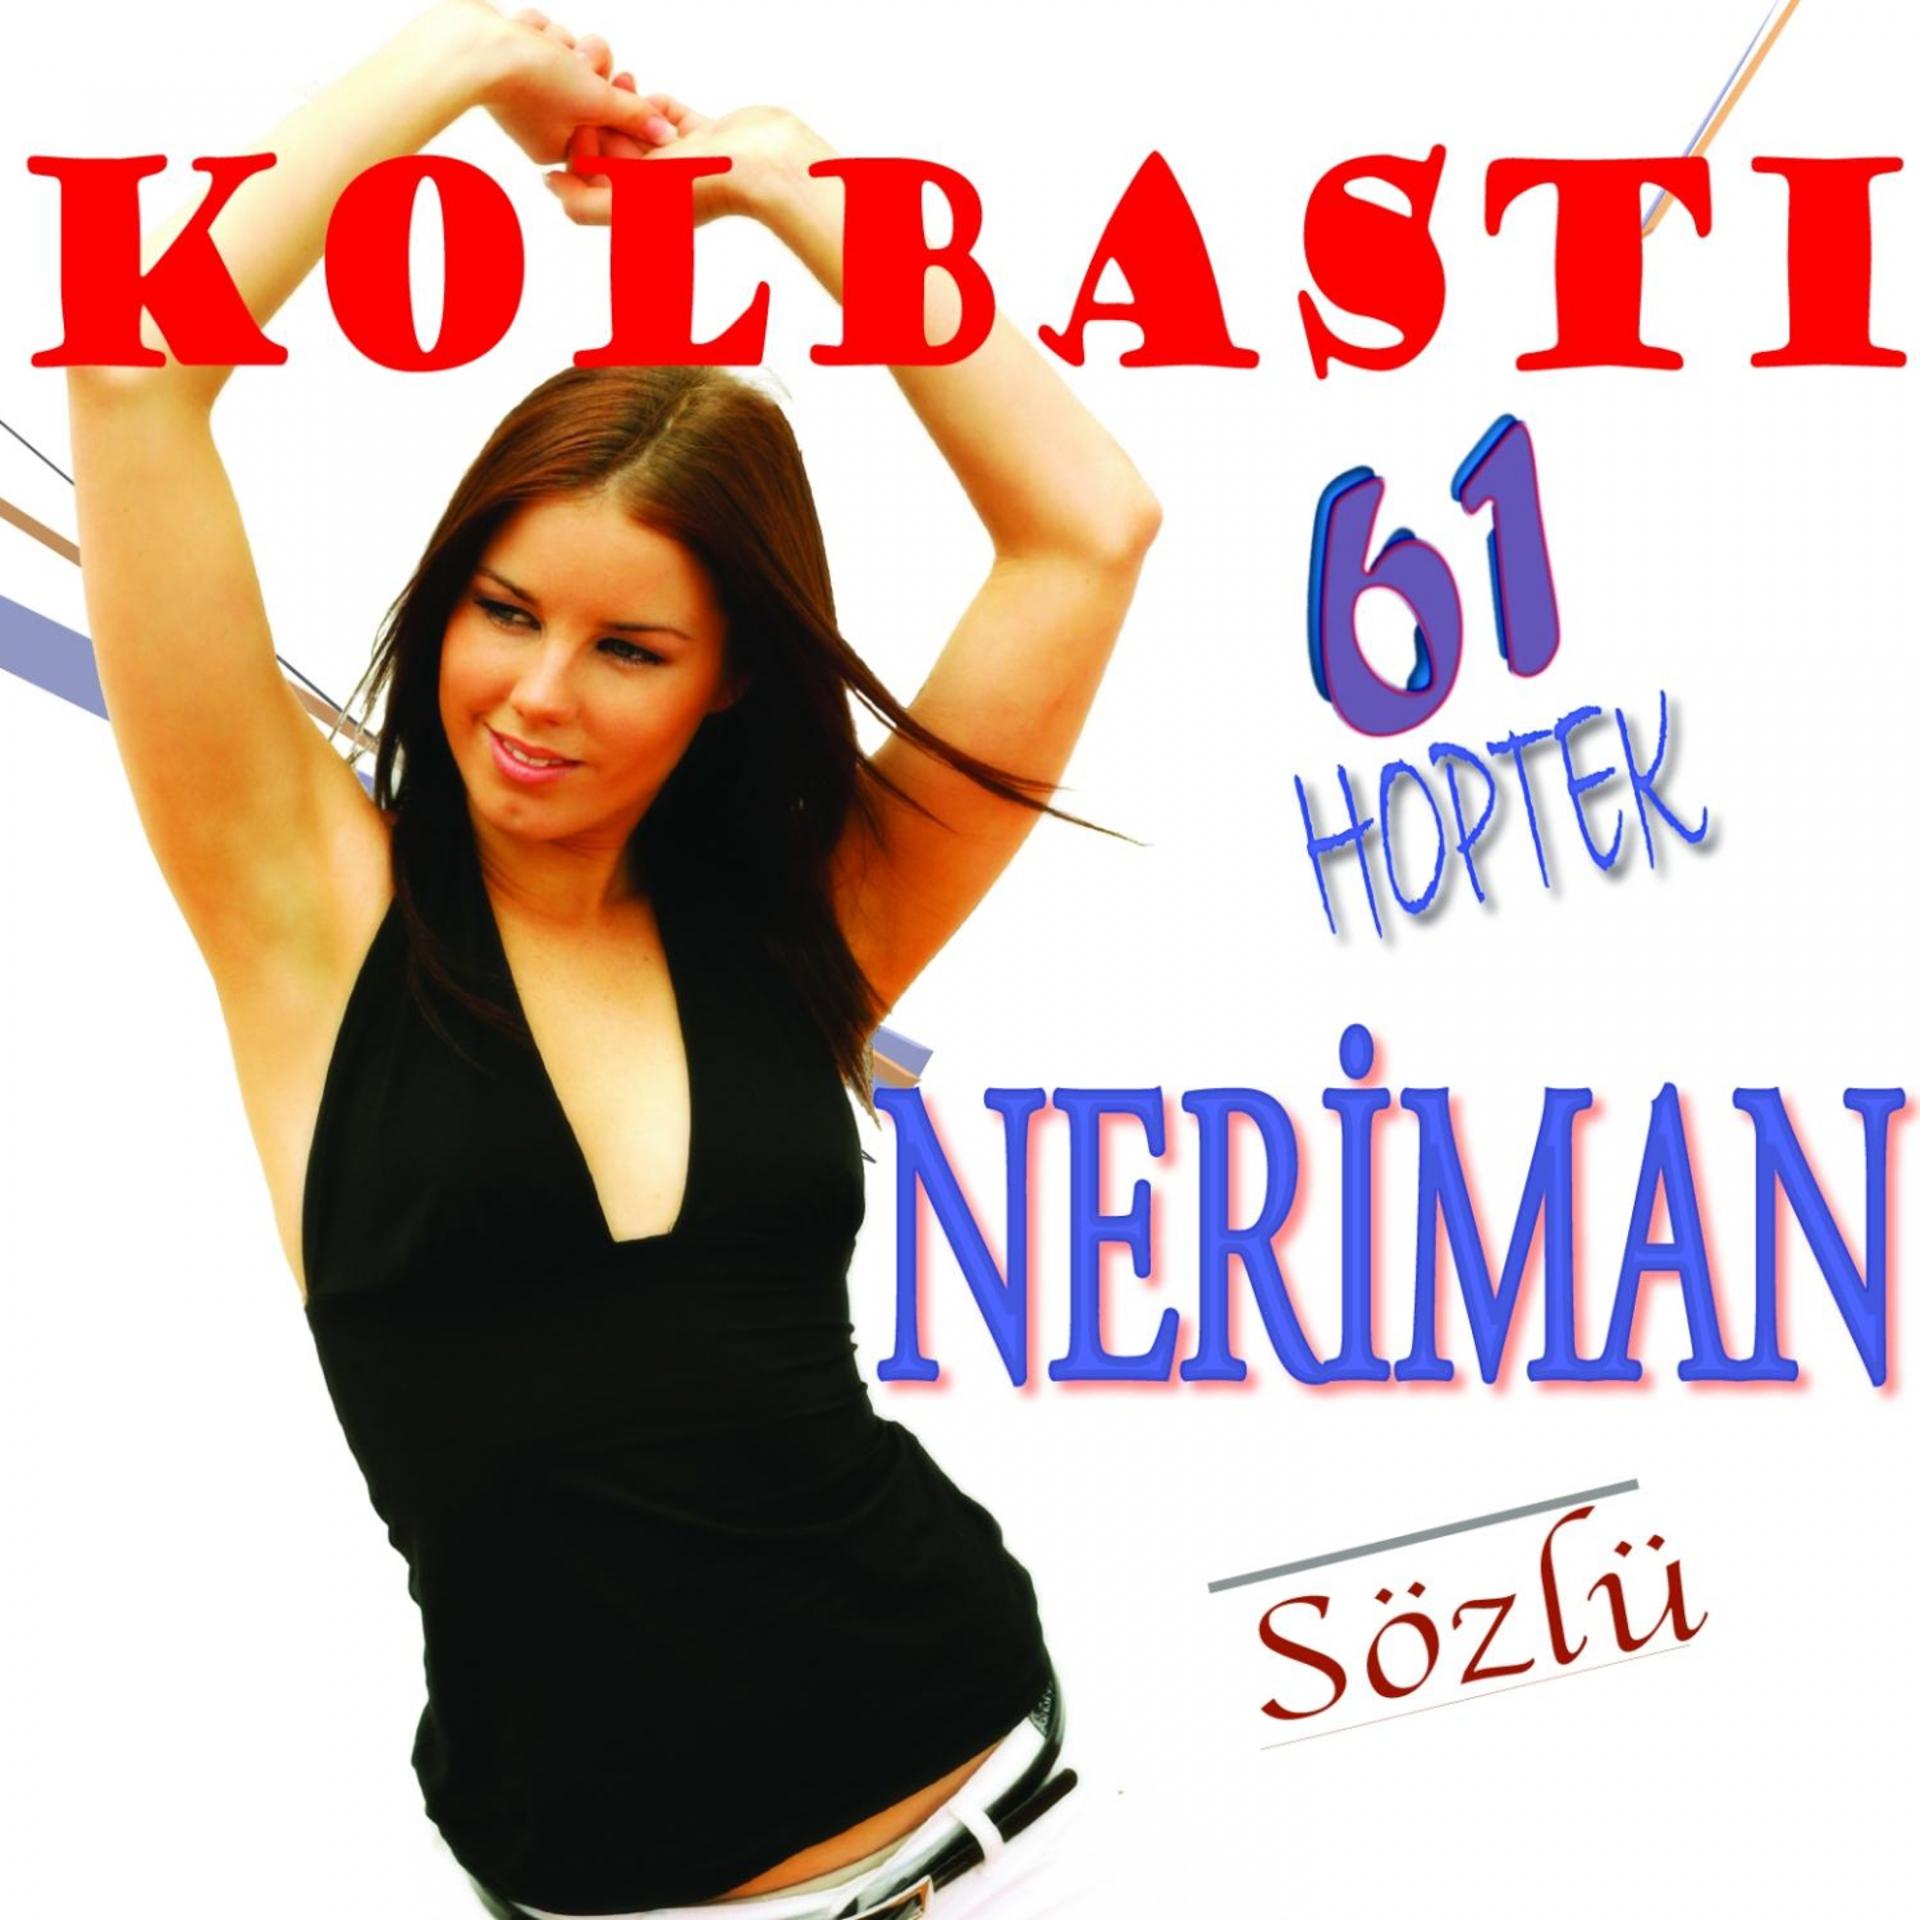 Постер альбома Kolbastı 61 Hoptek Neriman